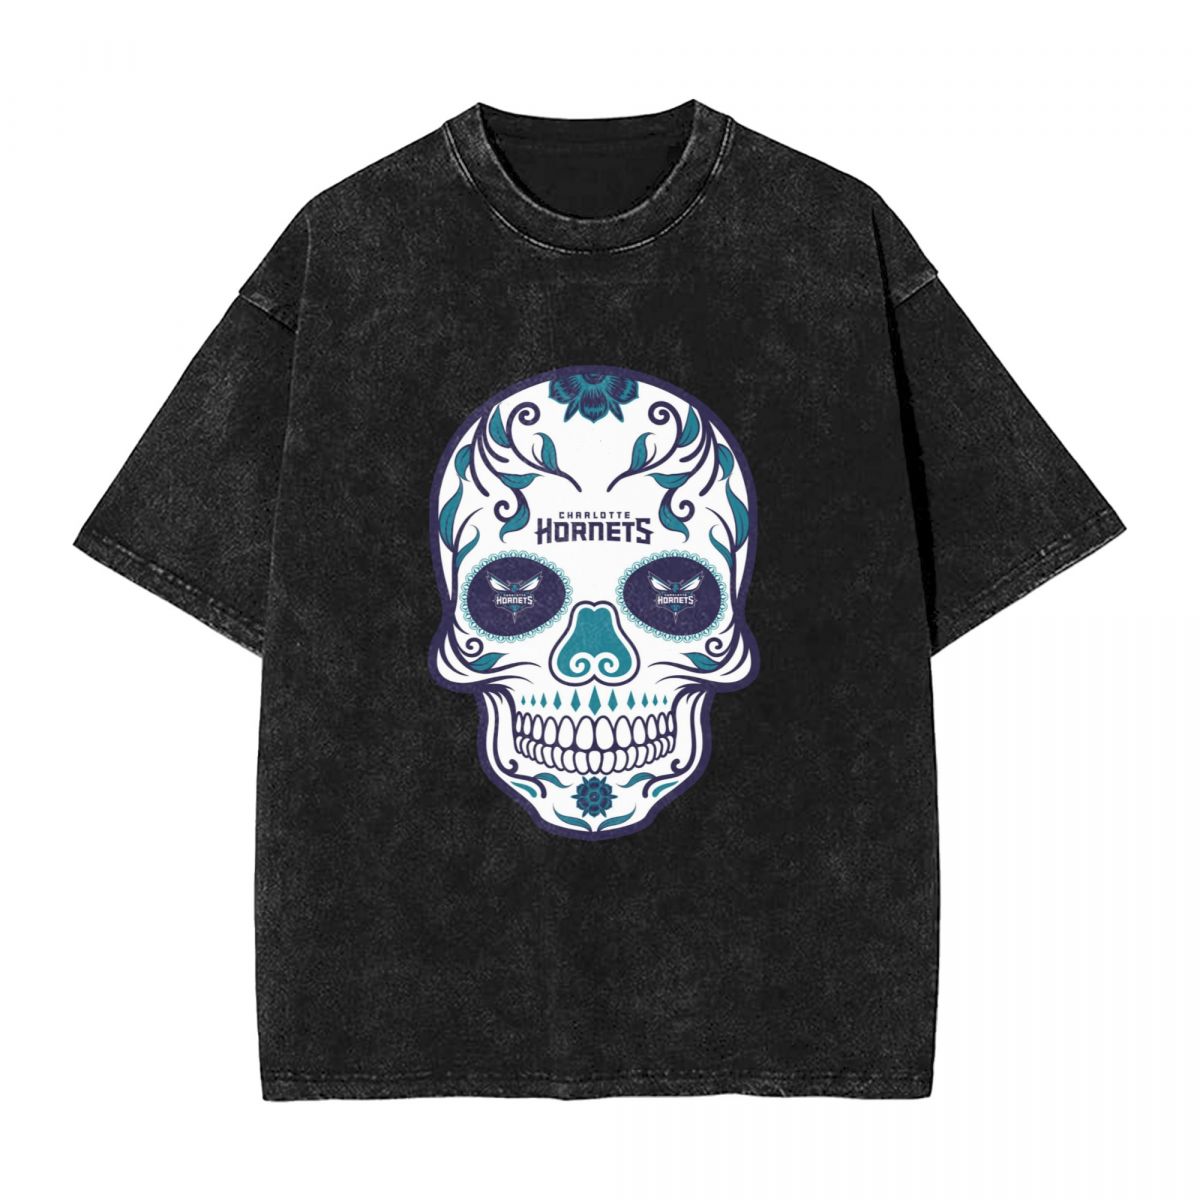 Charlotte Hornets Skull Washed Oversized Vintage Men's T-Shirt